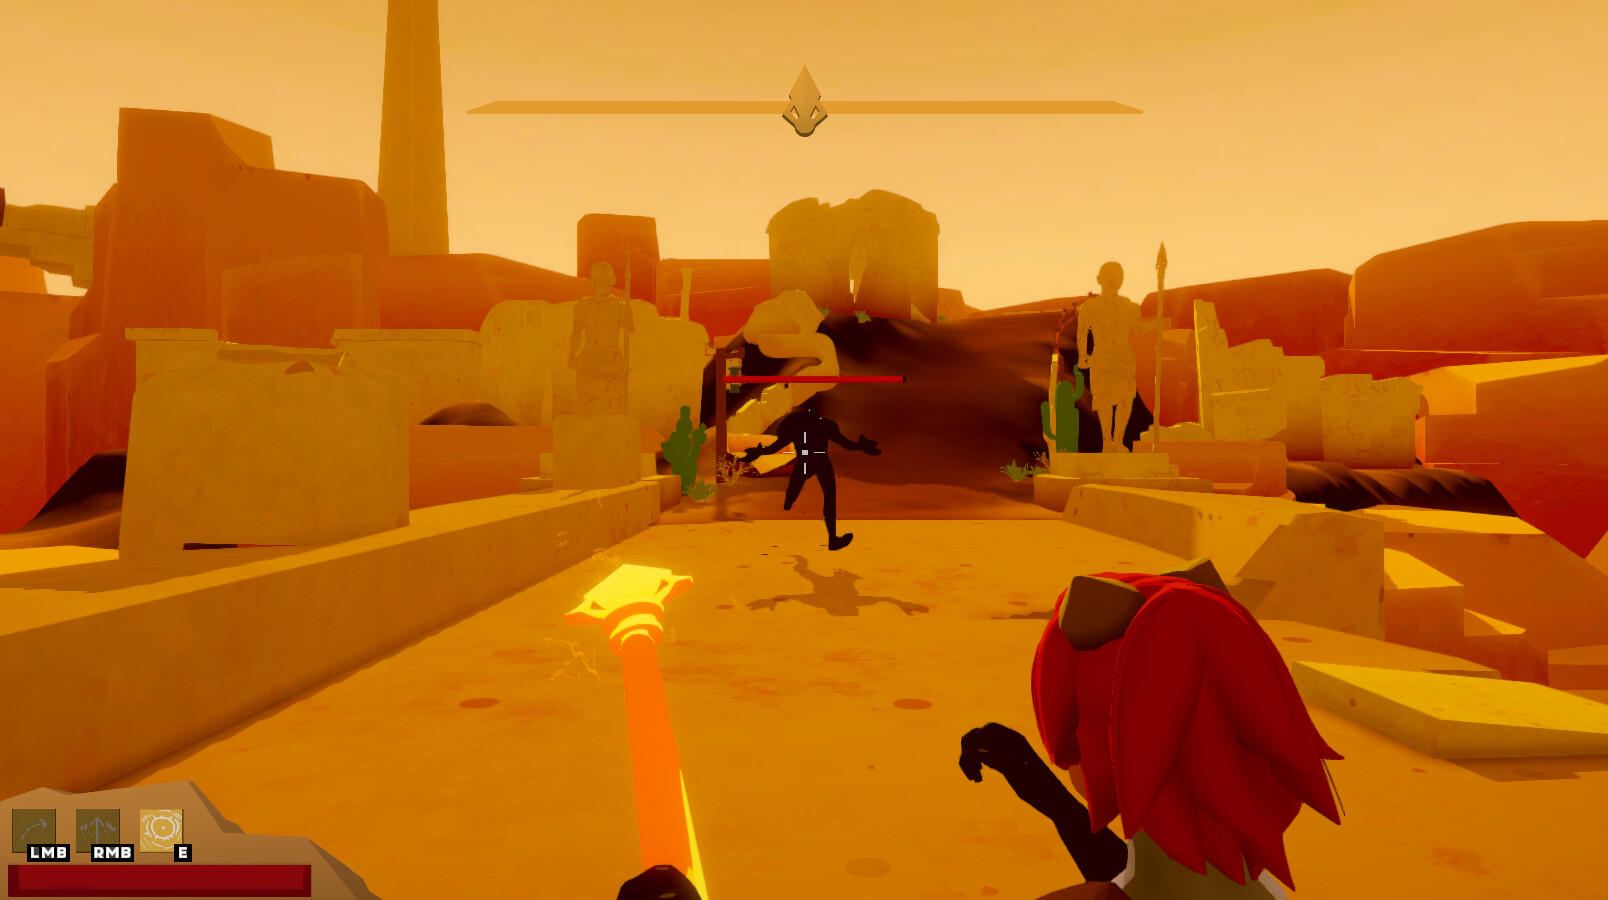 Sun Spear screenshot game